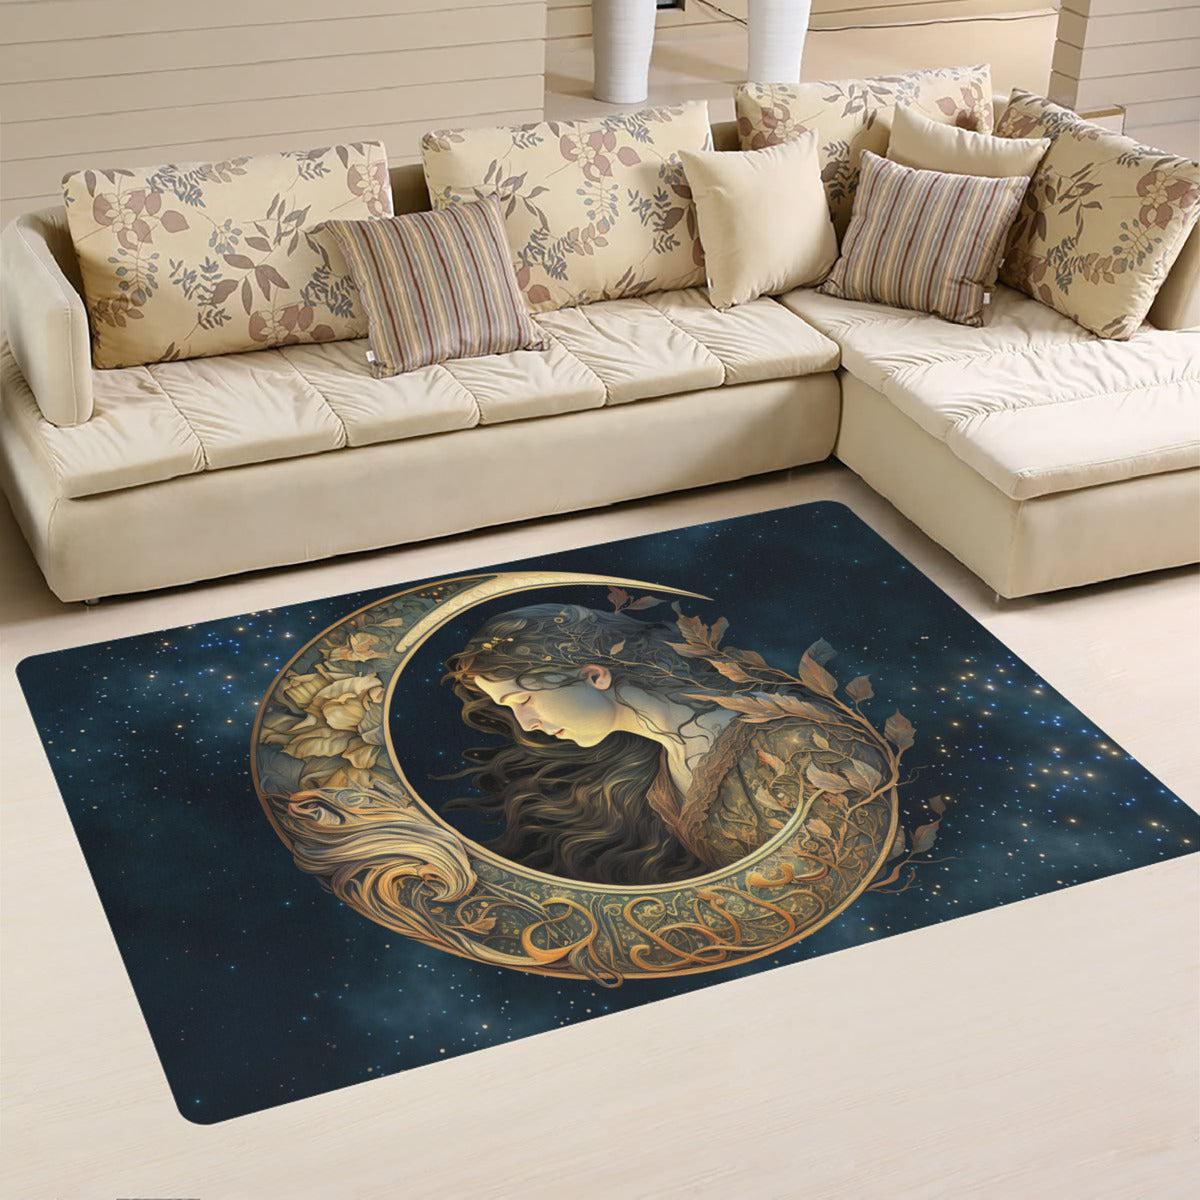 Moon goddess area rug Wicca pagan rug-MoonChildWorld